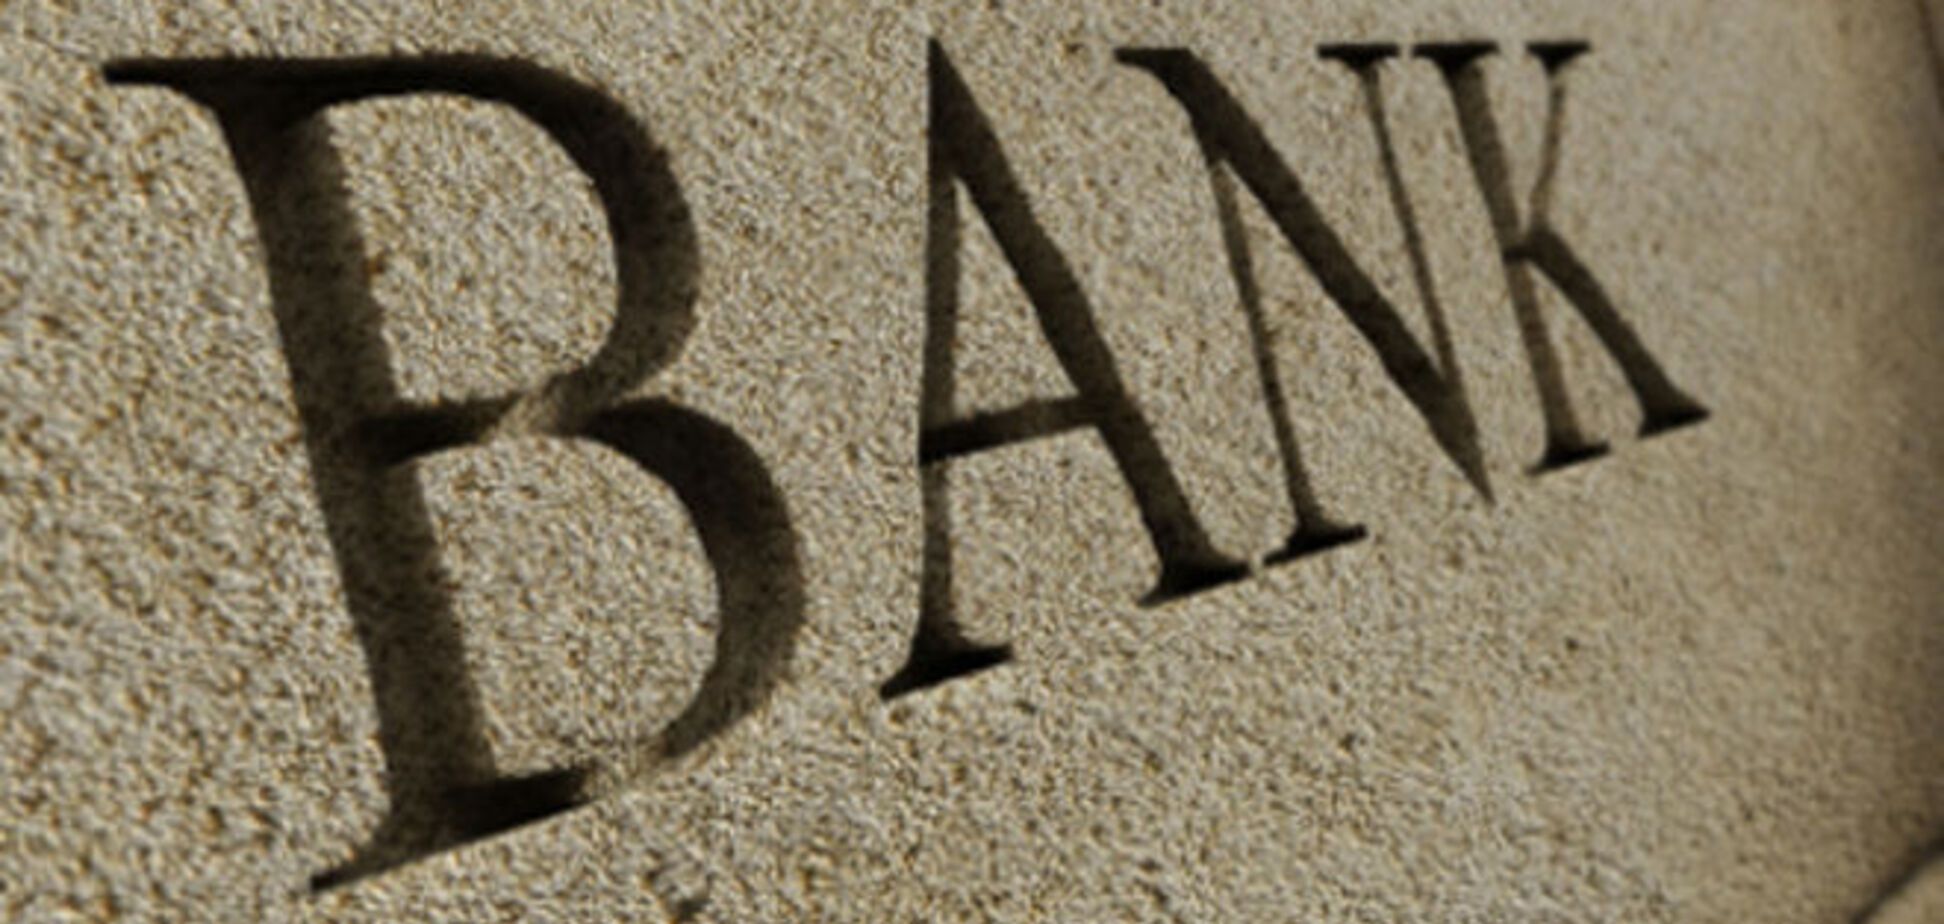 П'ять найбільших банків світу оштрафовані за маніпуляції на валютних ринках